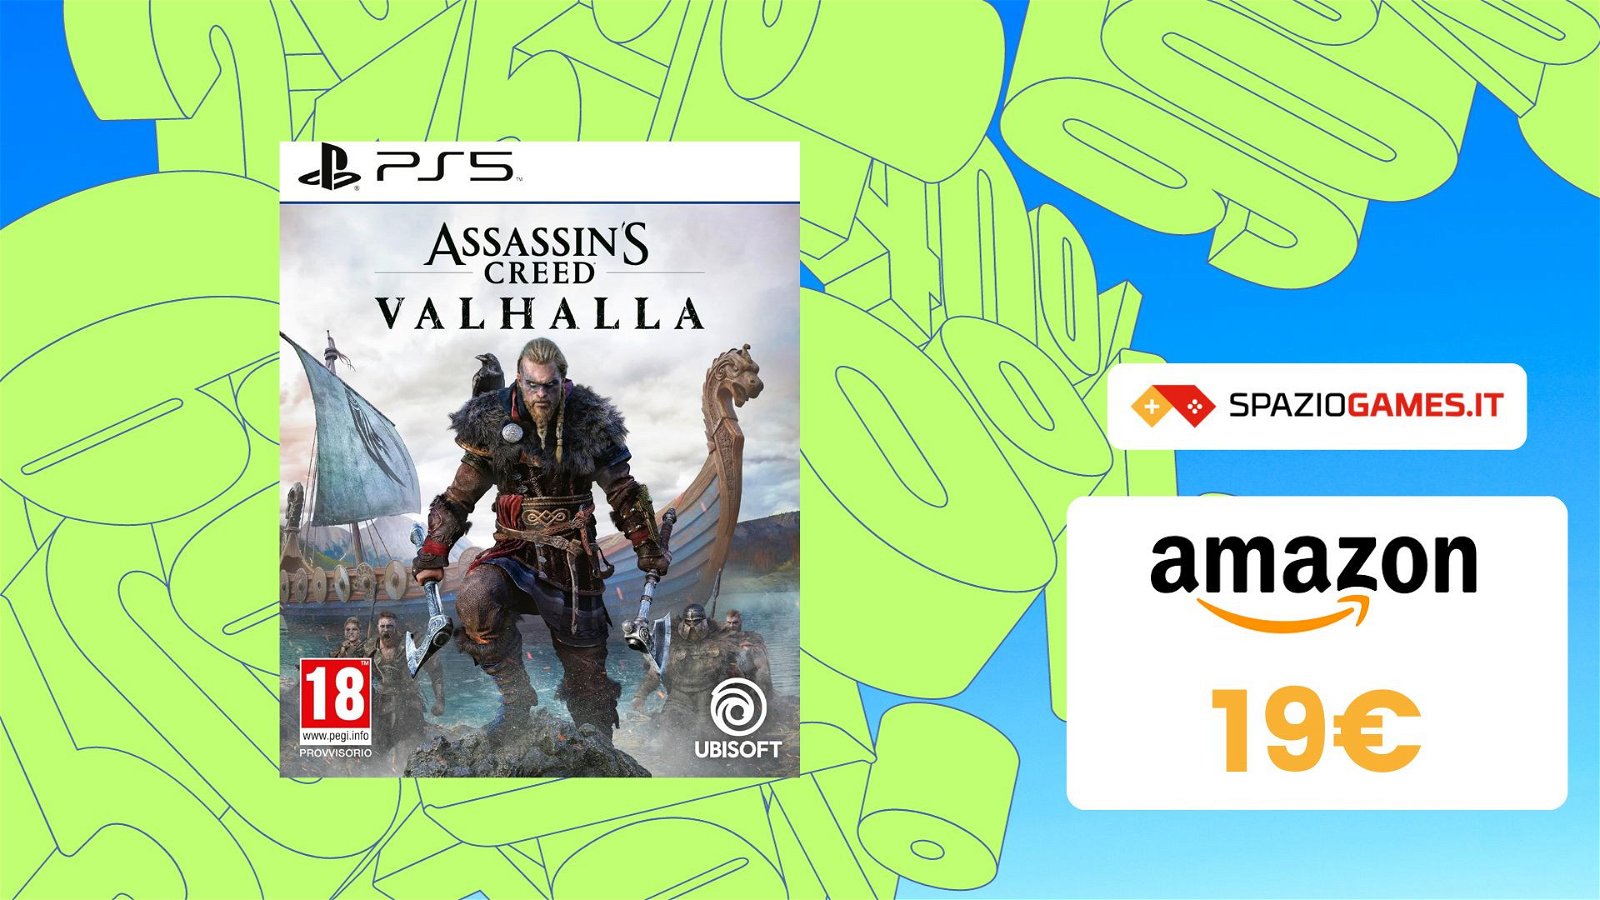 Assassin's Creed Valhalla per PS5: una gemma a soli 19€! IMPERDIBILE!